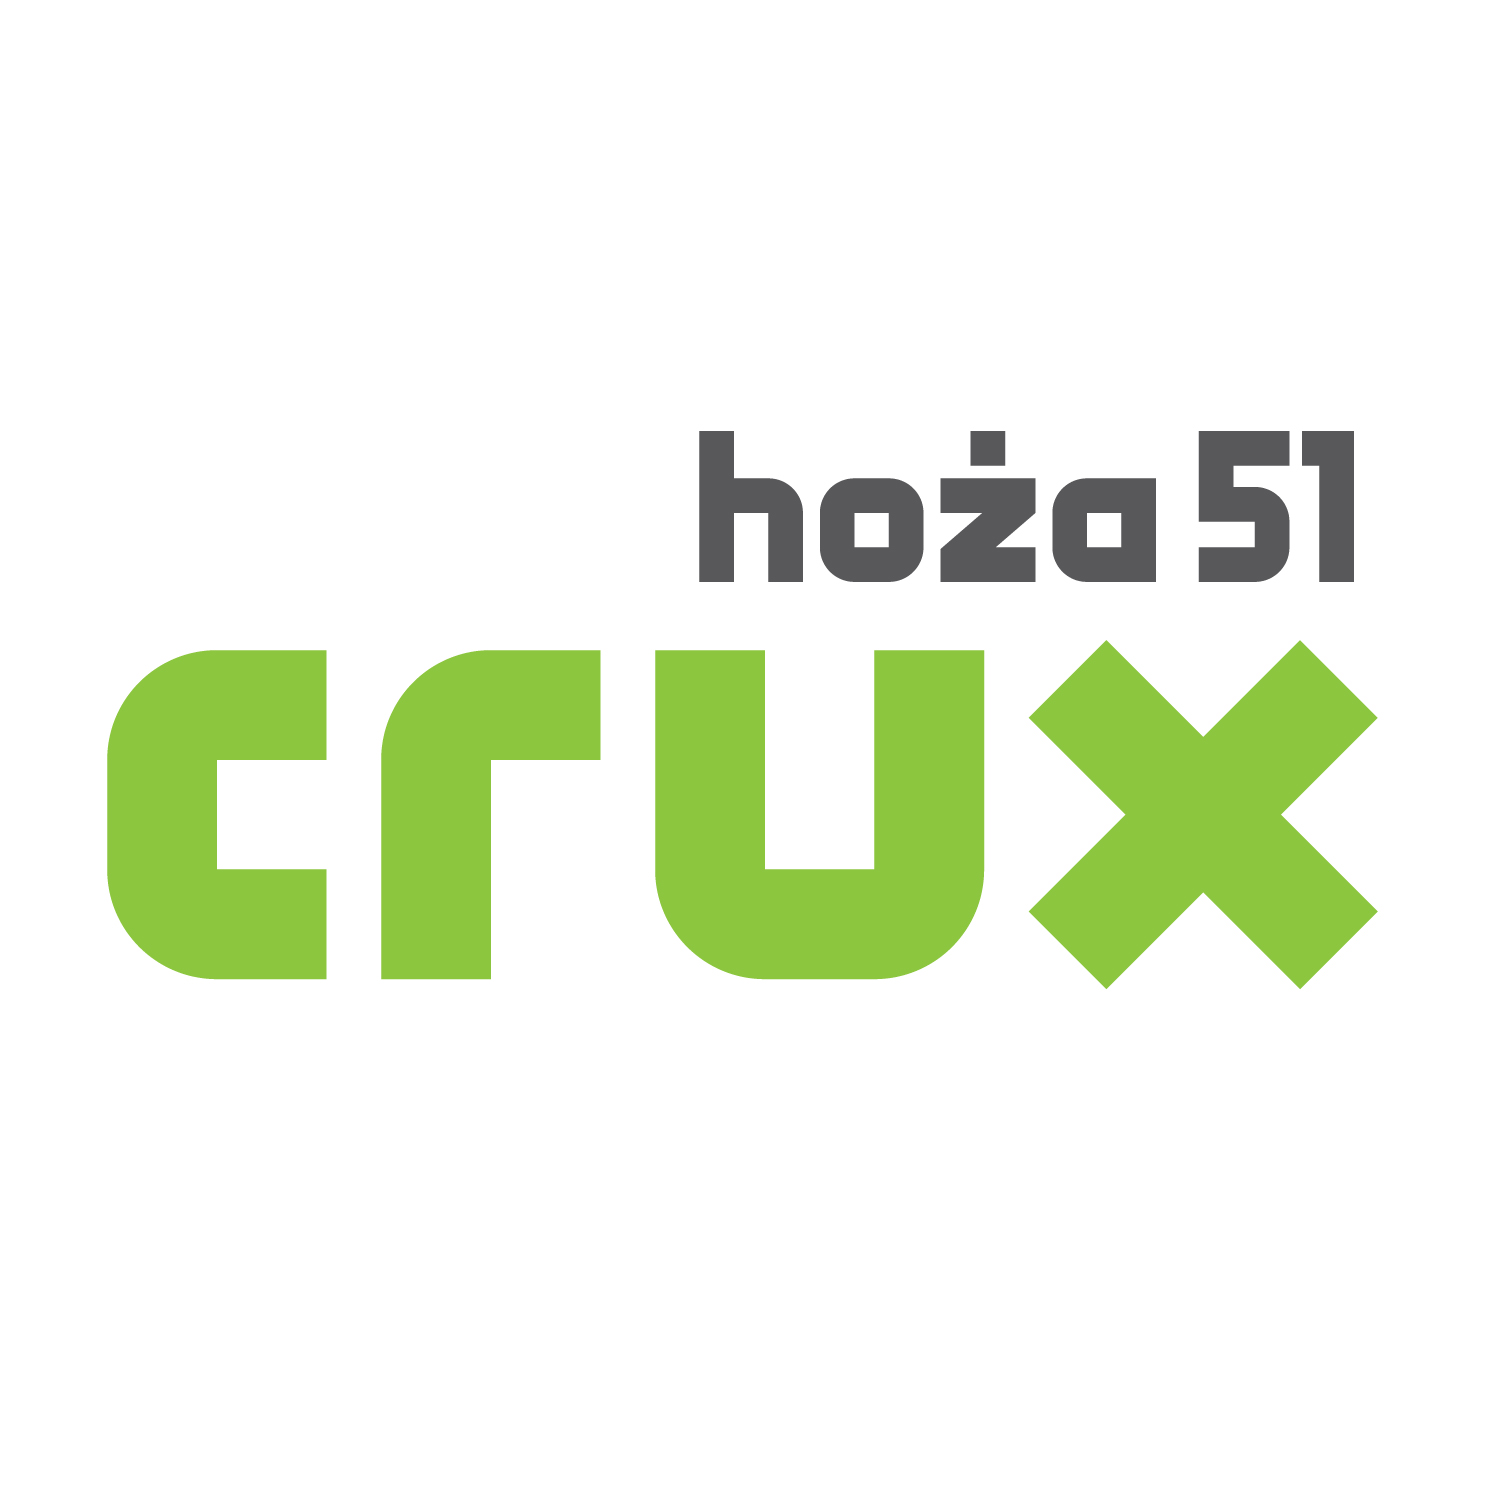 Crux sp. z o.o. 2021